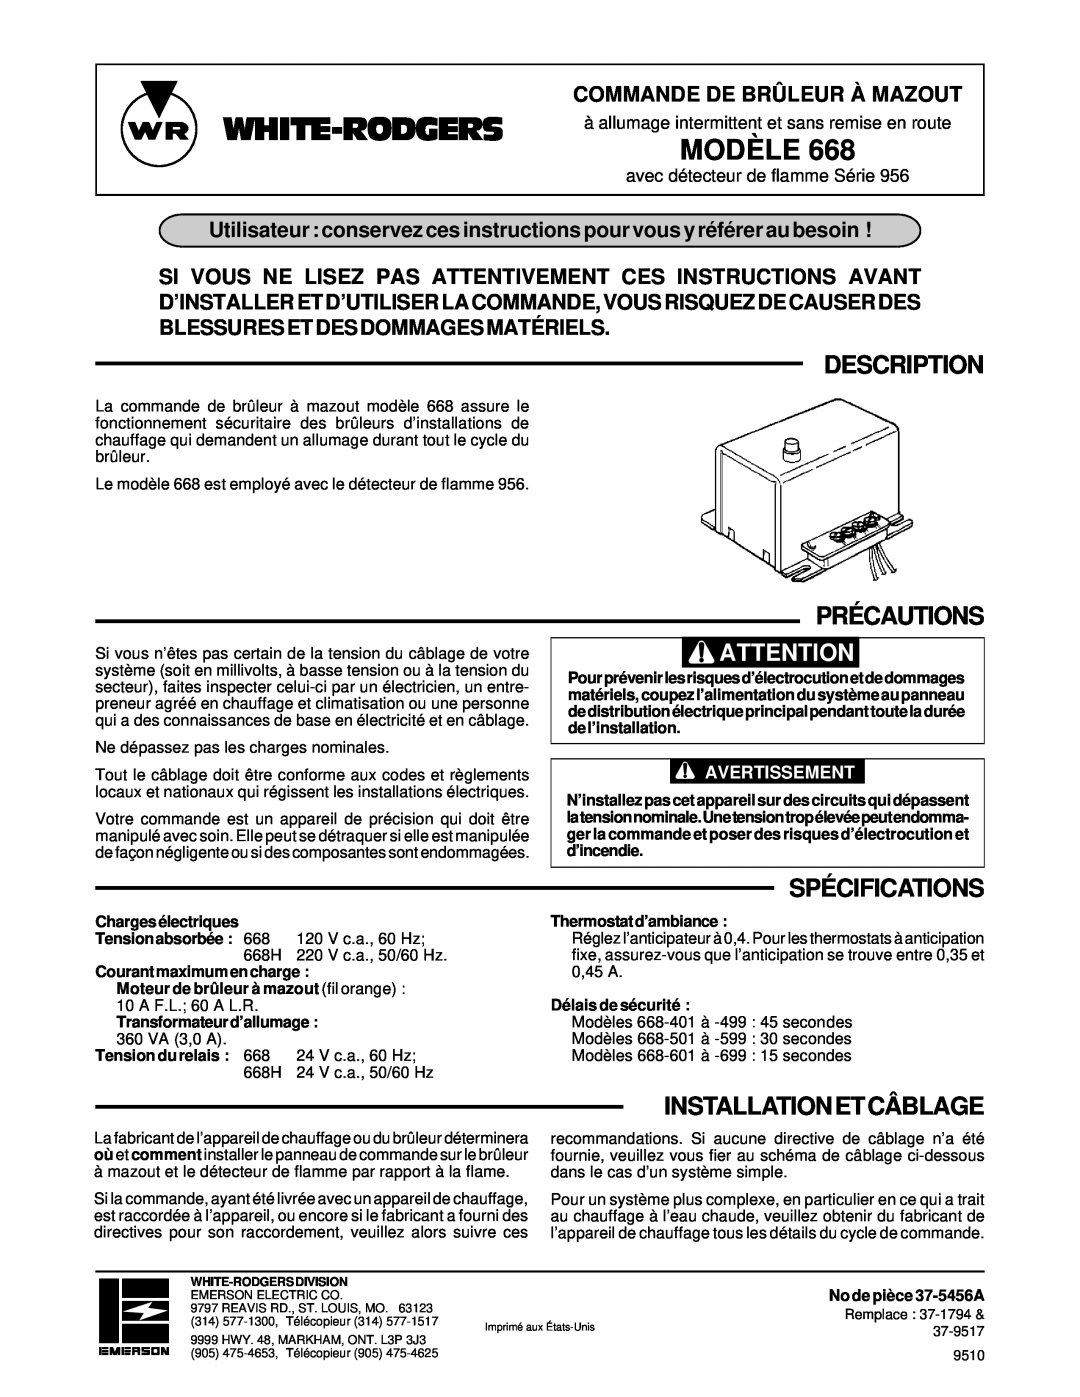 White Rodgers 668 Précautions, Installationetcâblage, White-Rodgers, Modèle, Description, Spécifications 